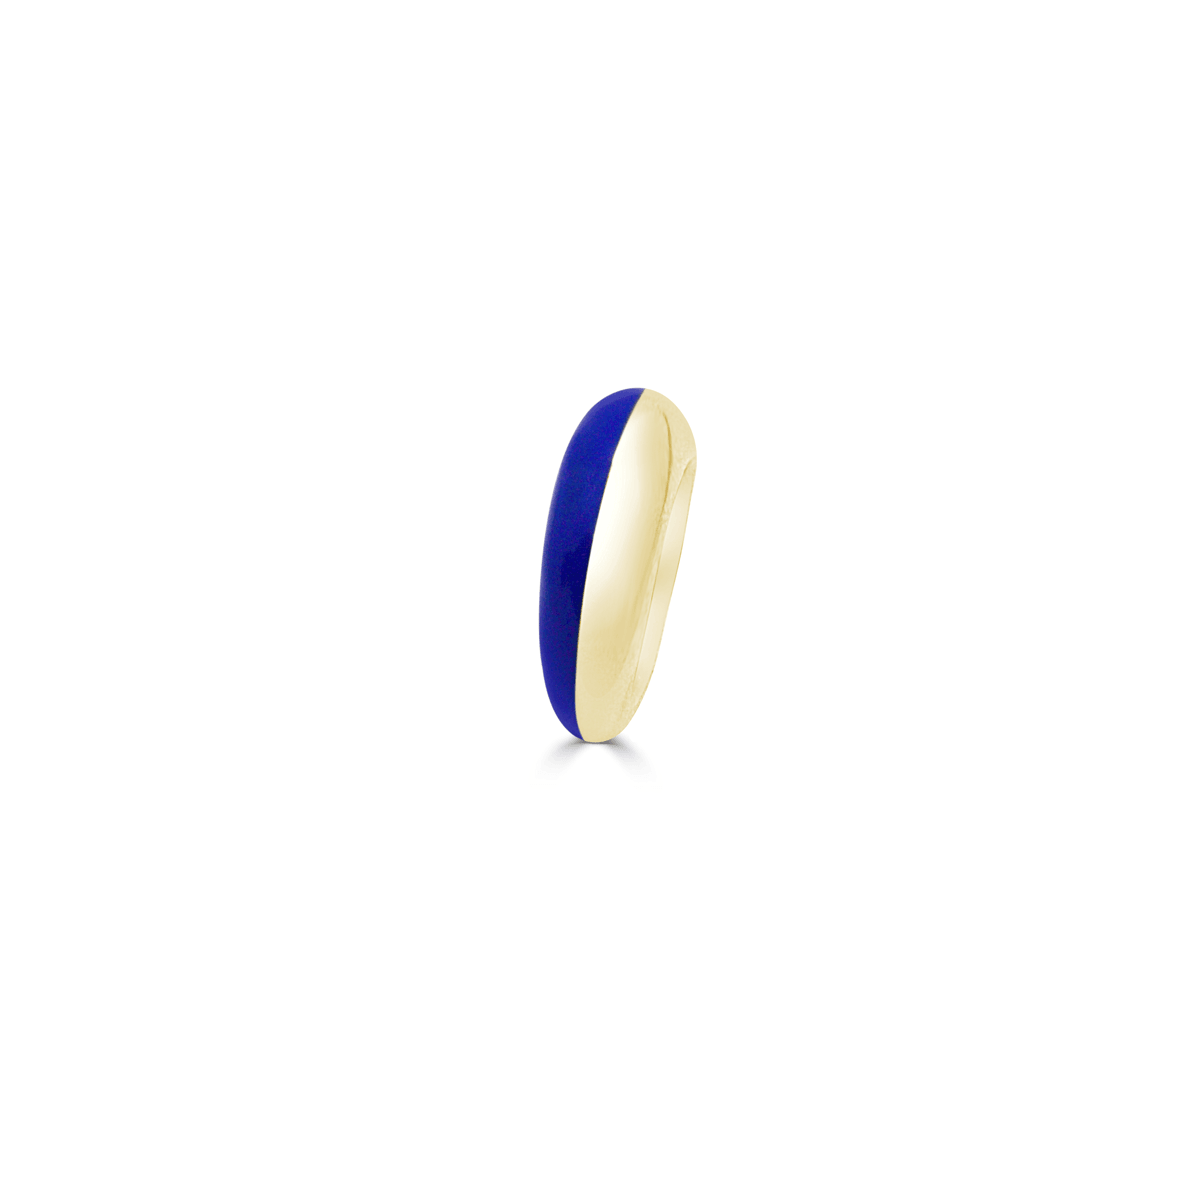 Miró Enamel Ring - Special Edition - NUUK